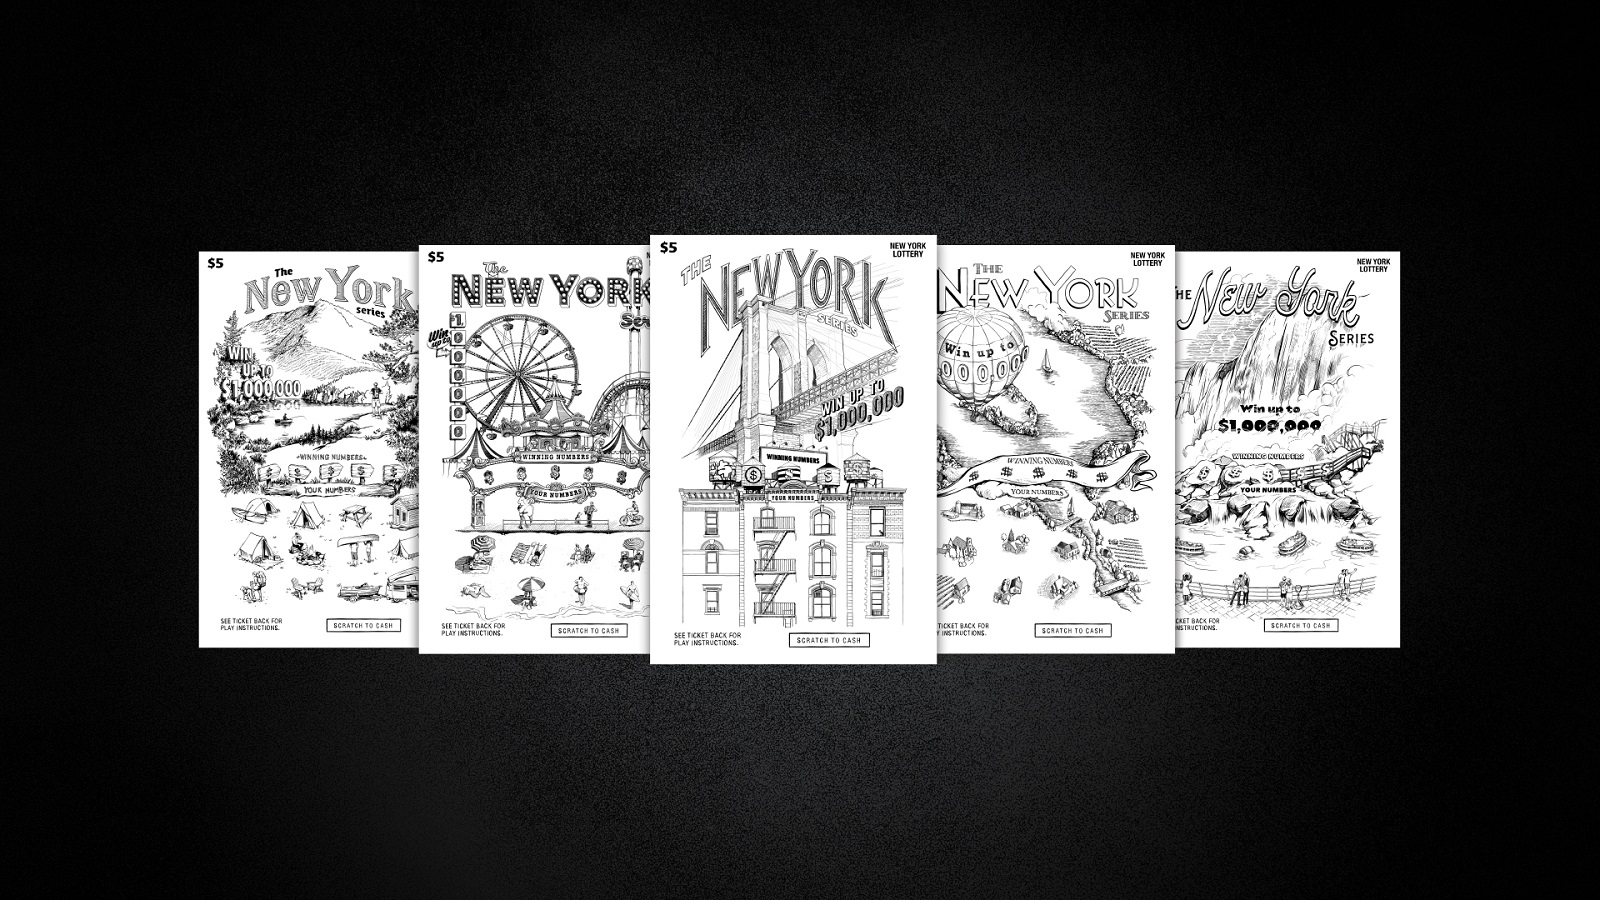 Scratch-Off Lottery Tickets Wear NY’s Landmarks